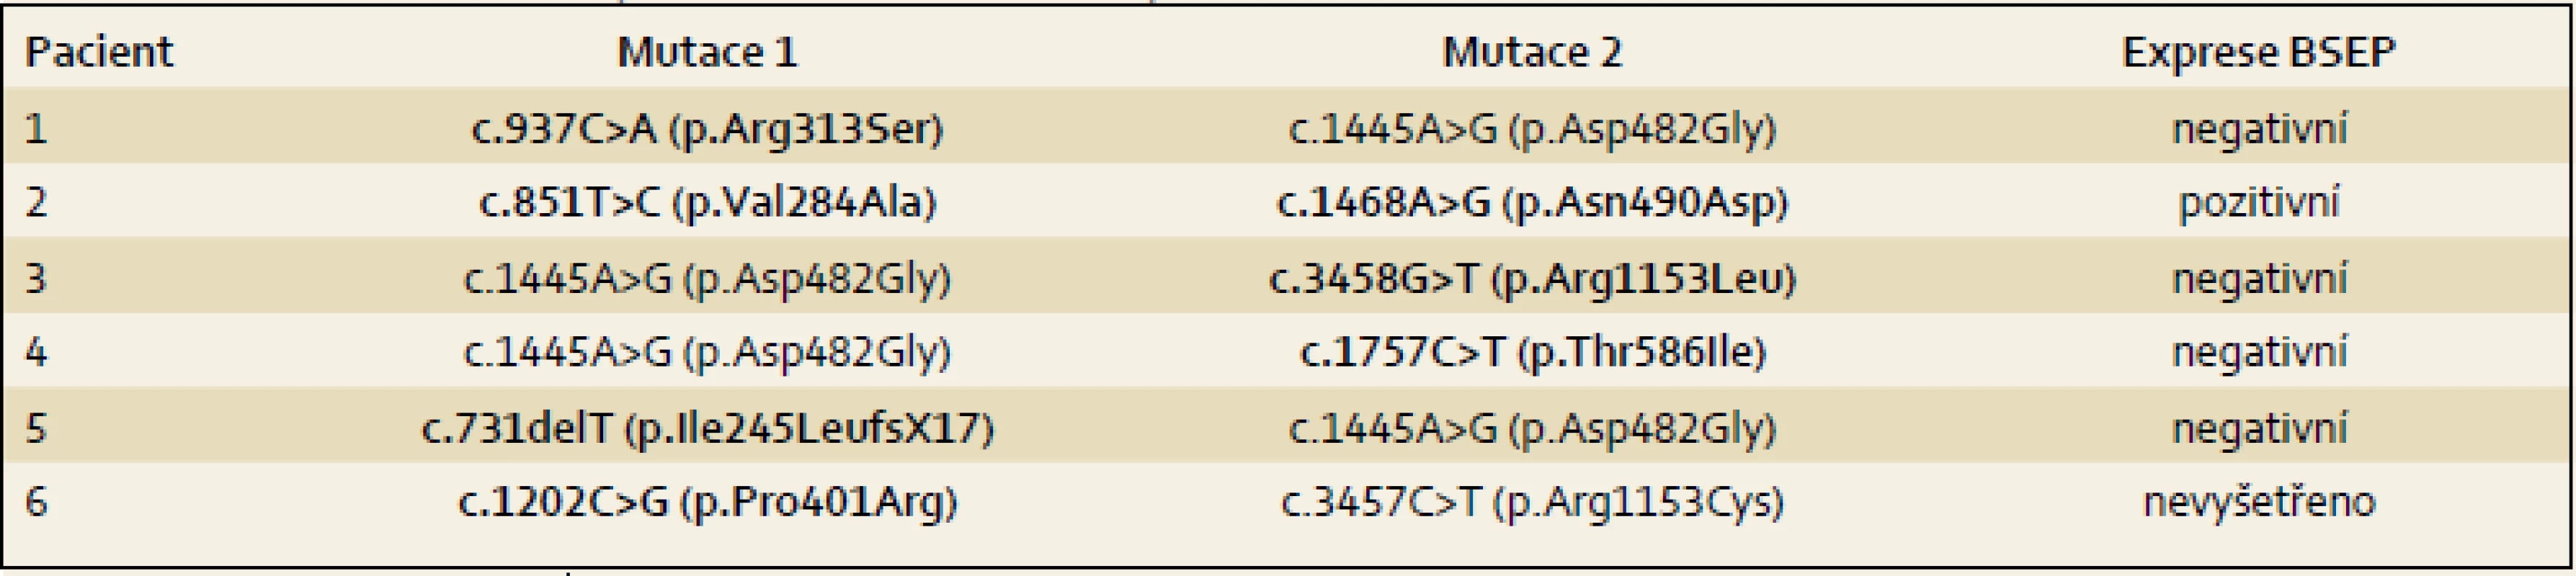 Mutace v ABCB11 u pacientů s PFIC2. Nově identifikované mutace jsou vyznačeny tučně.
Tab. 4. Mutations in ABCB11 patients with PFIC2. Newly identified mutations are indicated in bold.